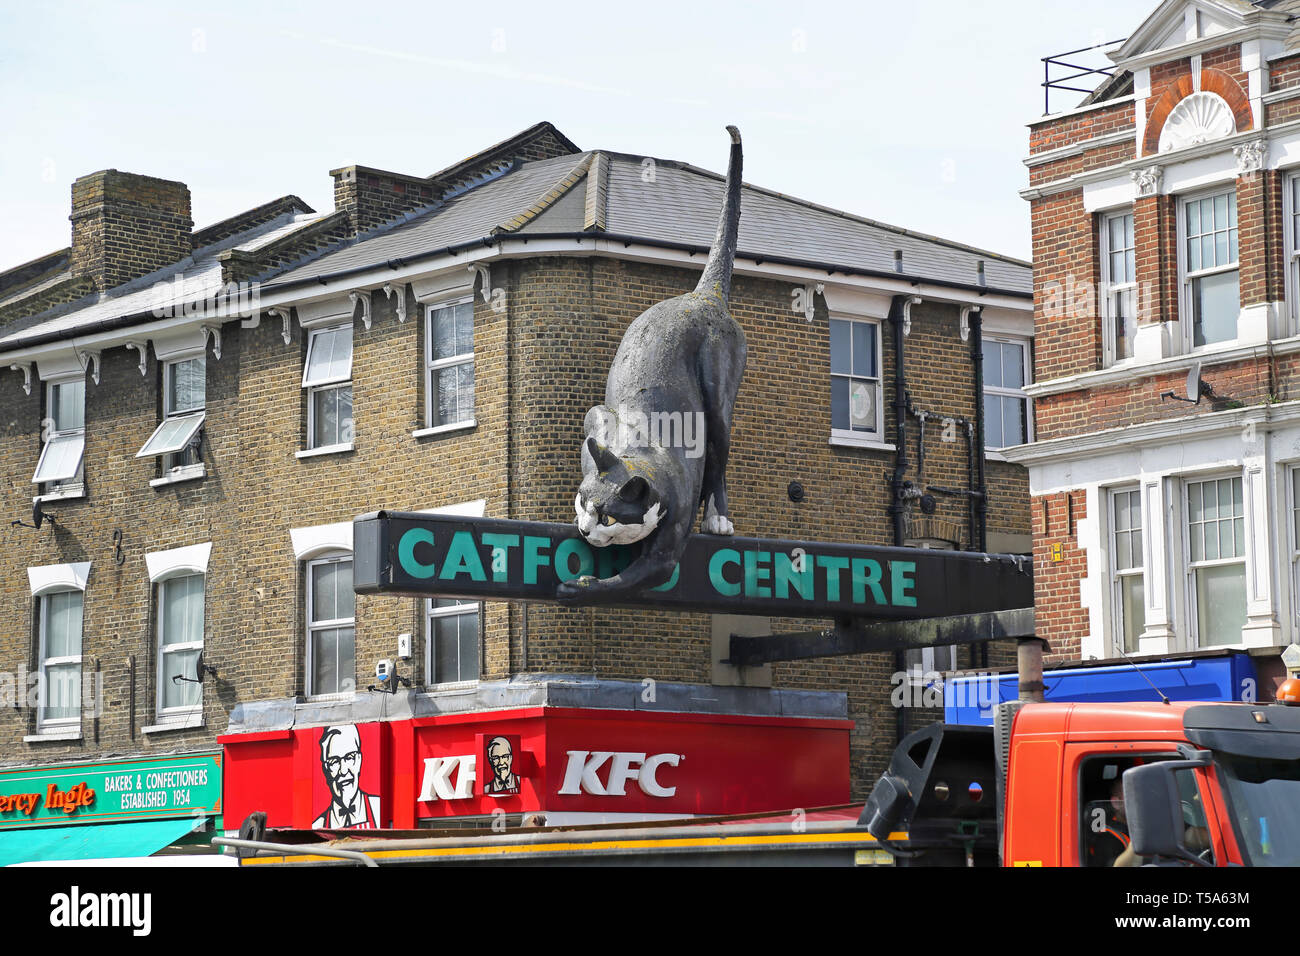 Eingang zum catford Center, eine Einkaufszone in Catford, London, UK. Zeigt die berühmte Katze, Skulptur, entworfen vom Architekten Denys Lasdun. Stockfoto